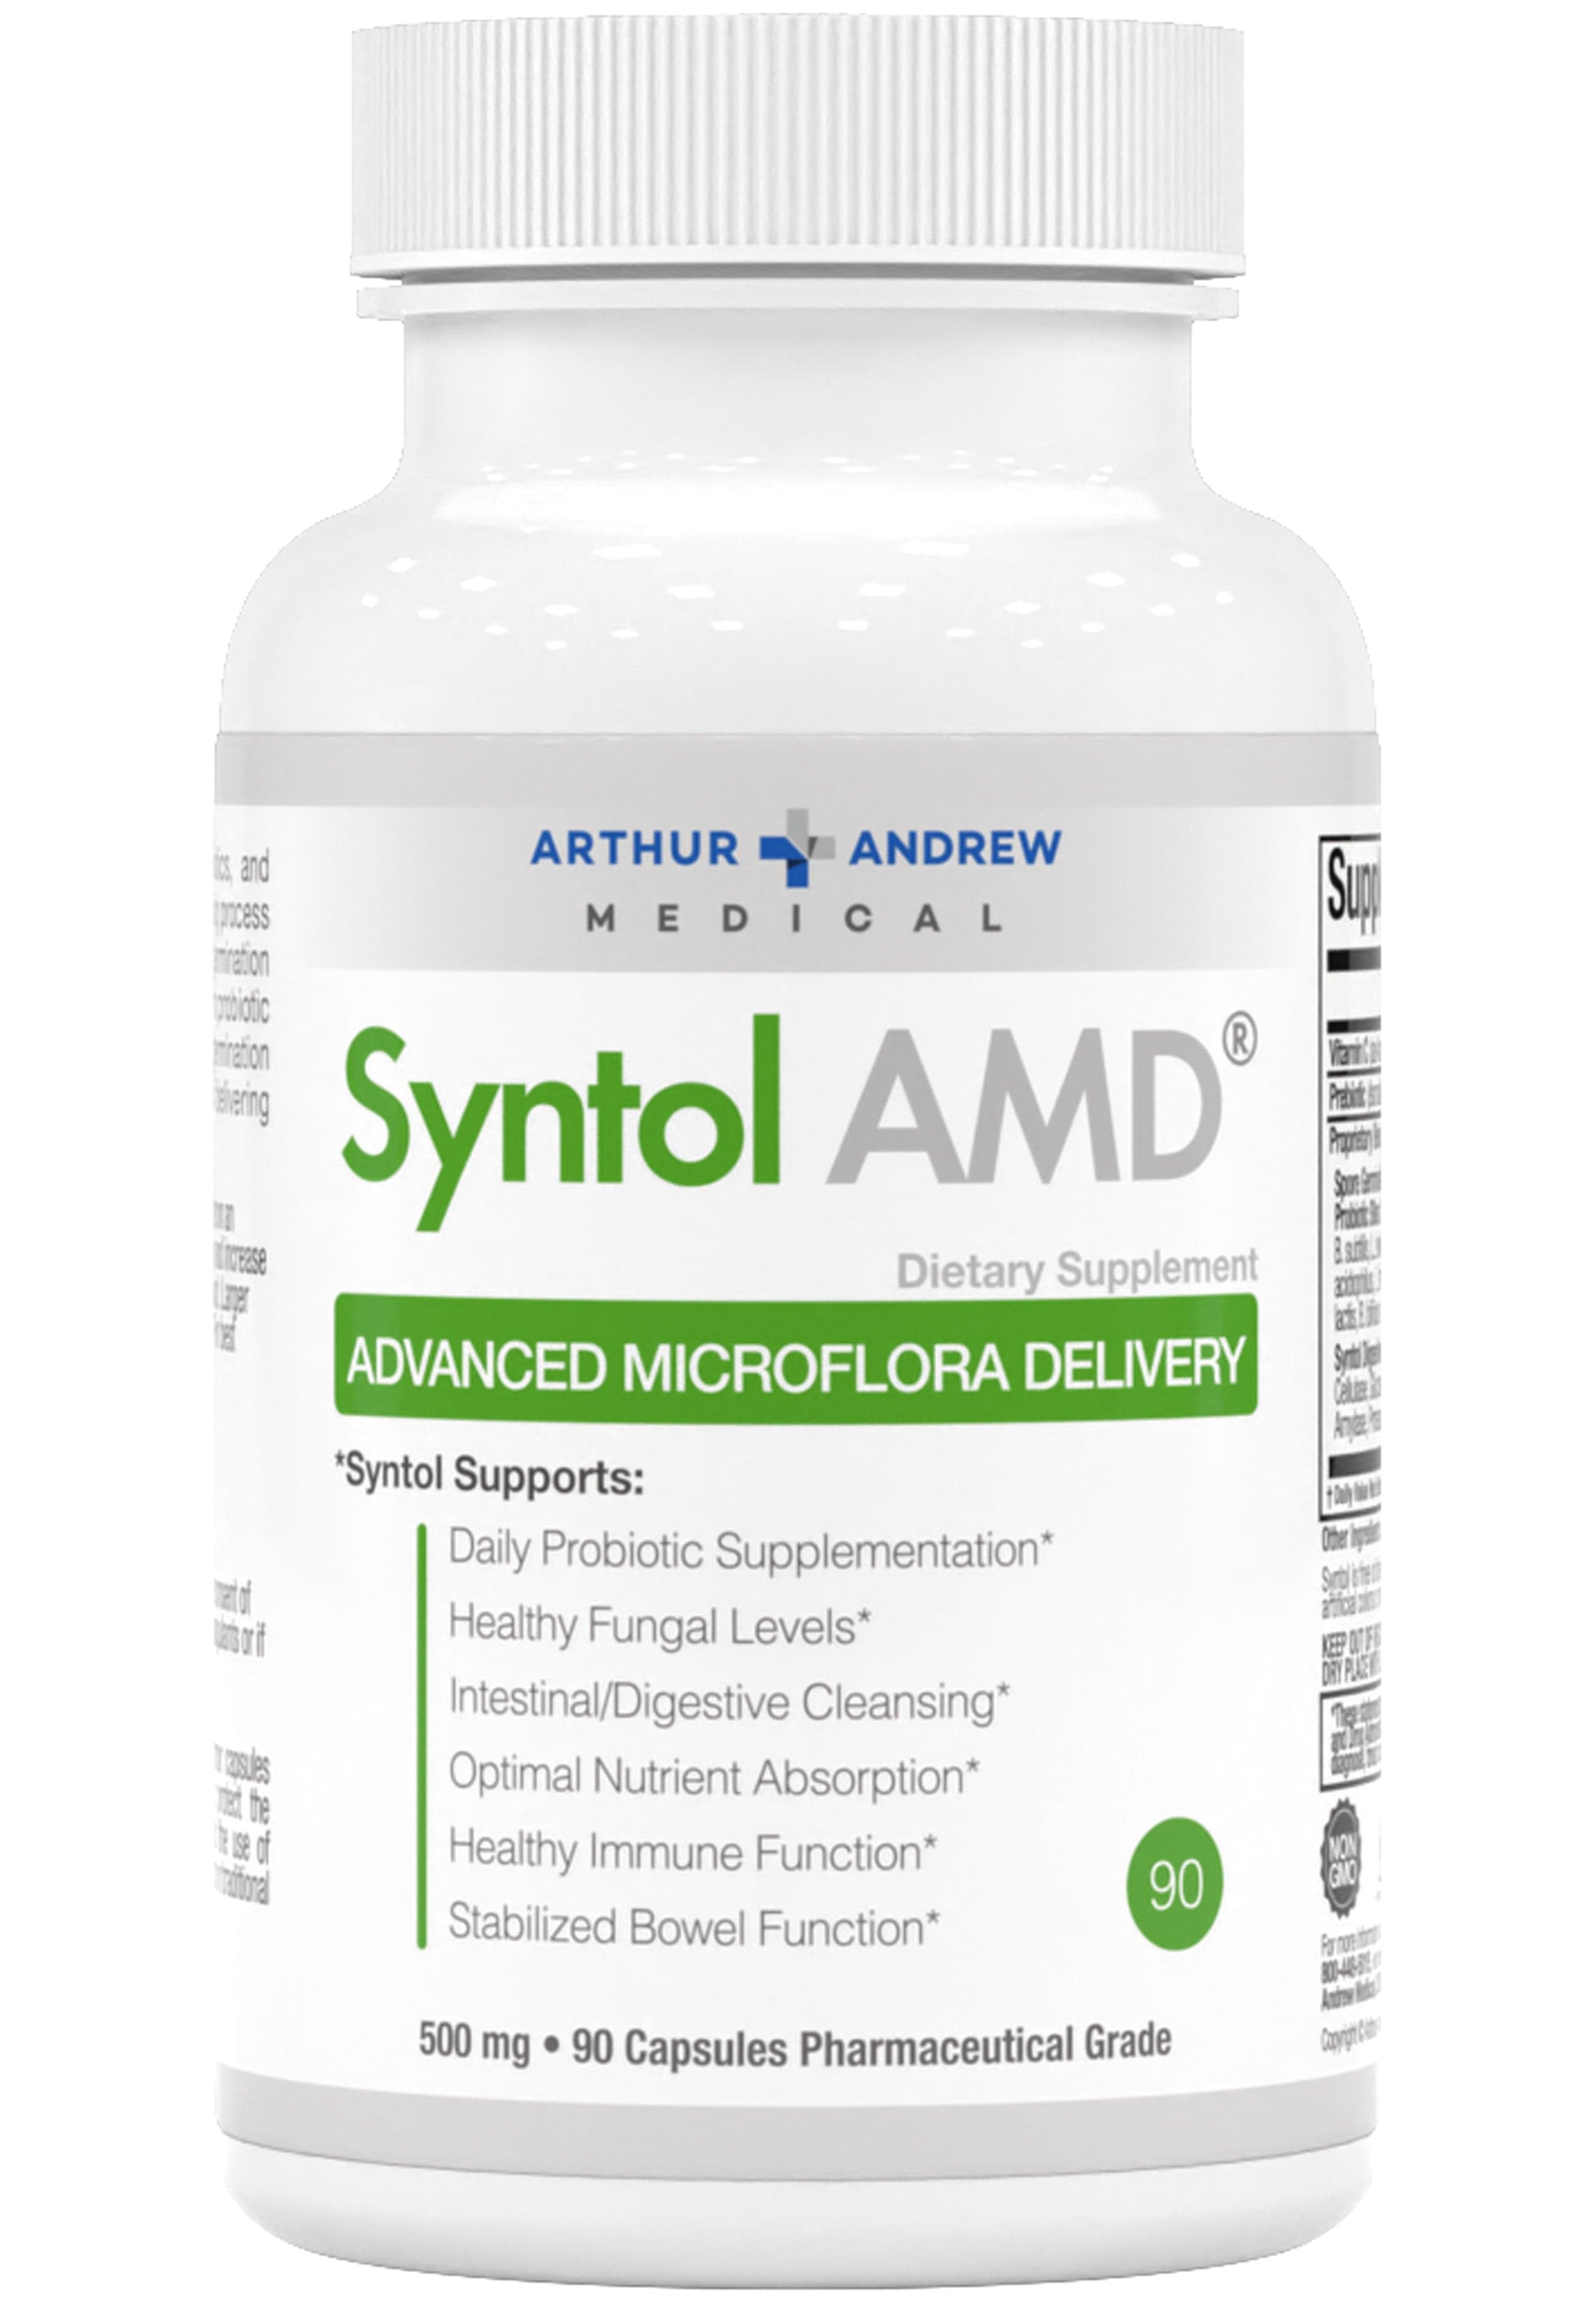 Arthur Andrew Medical Syntol AMD